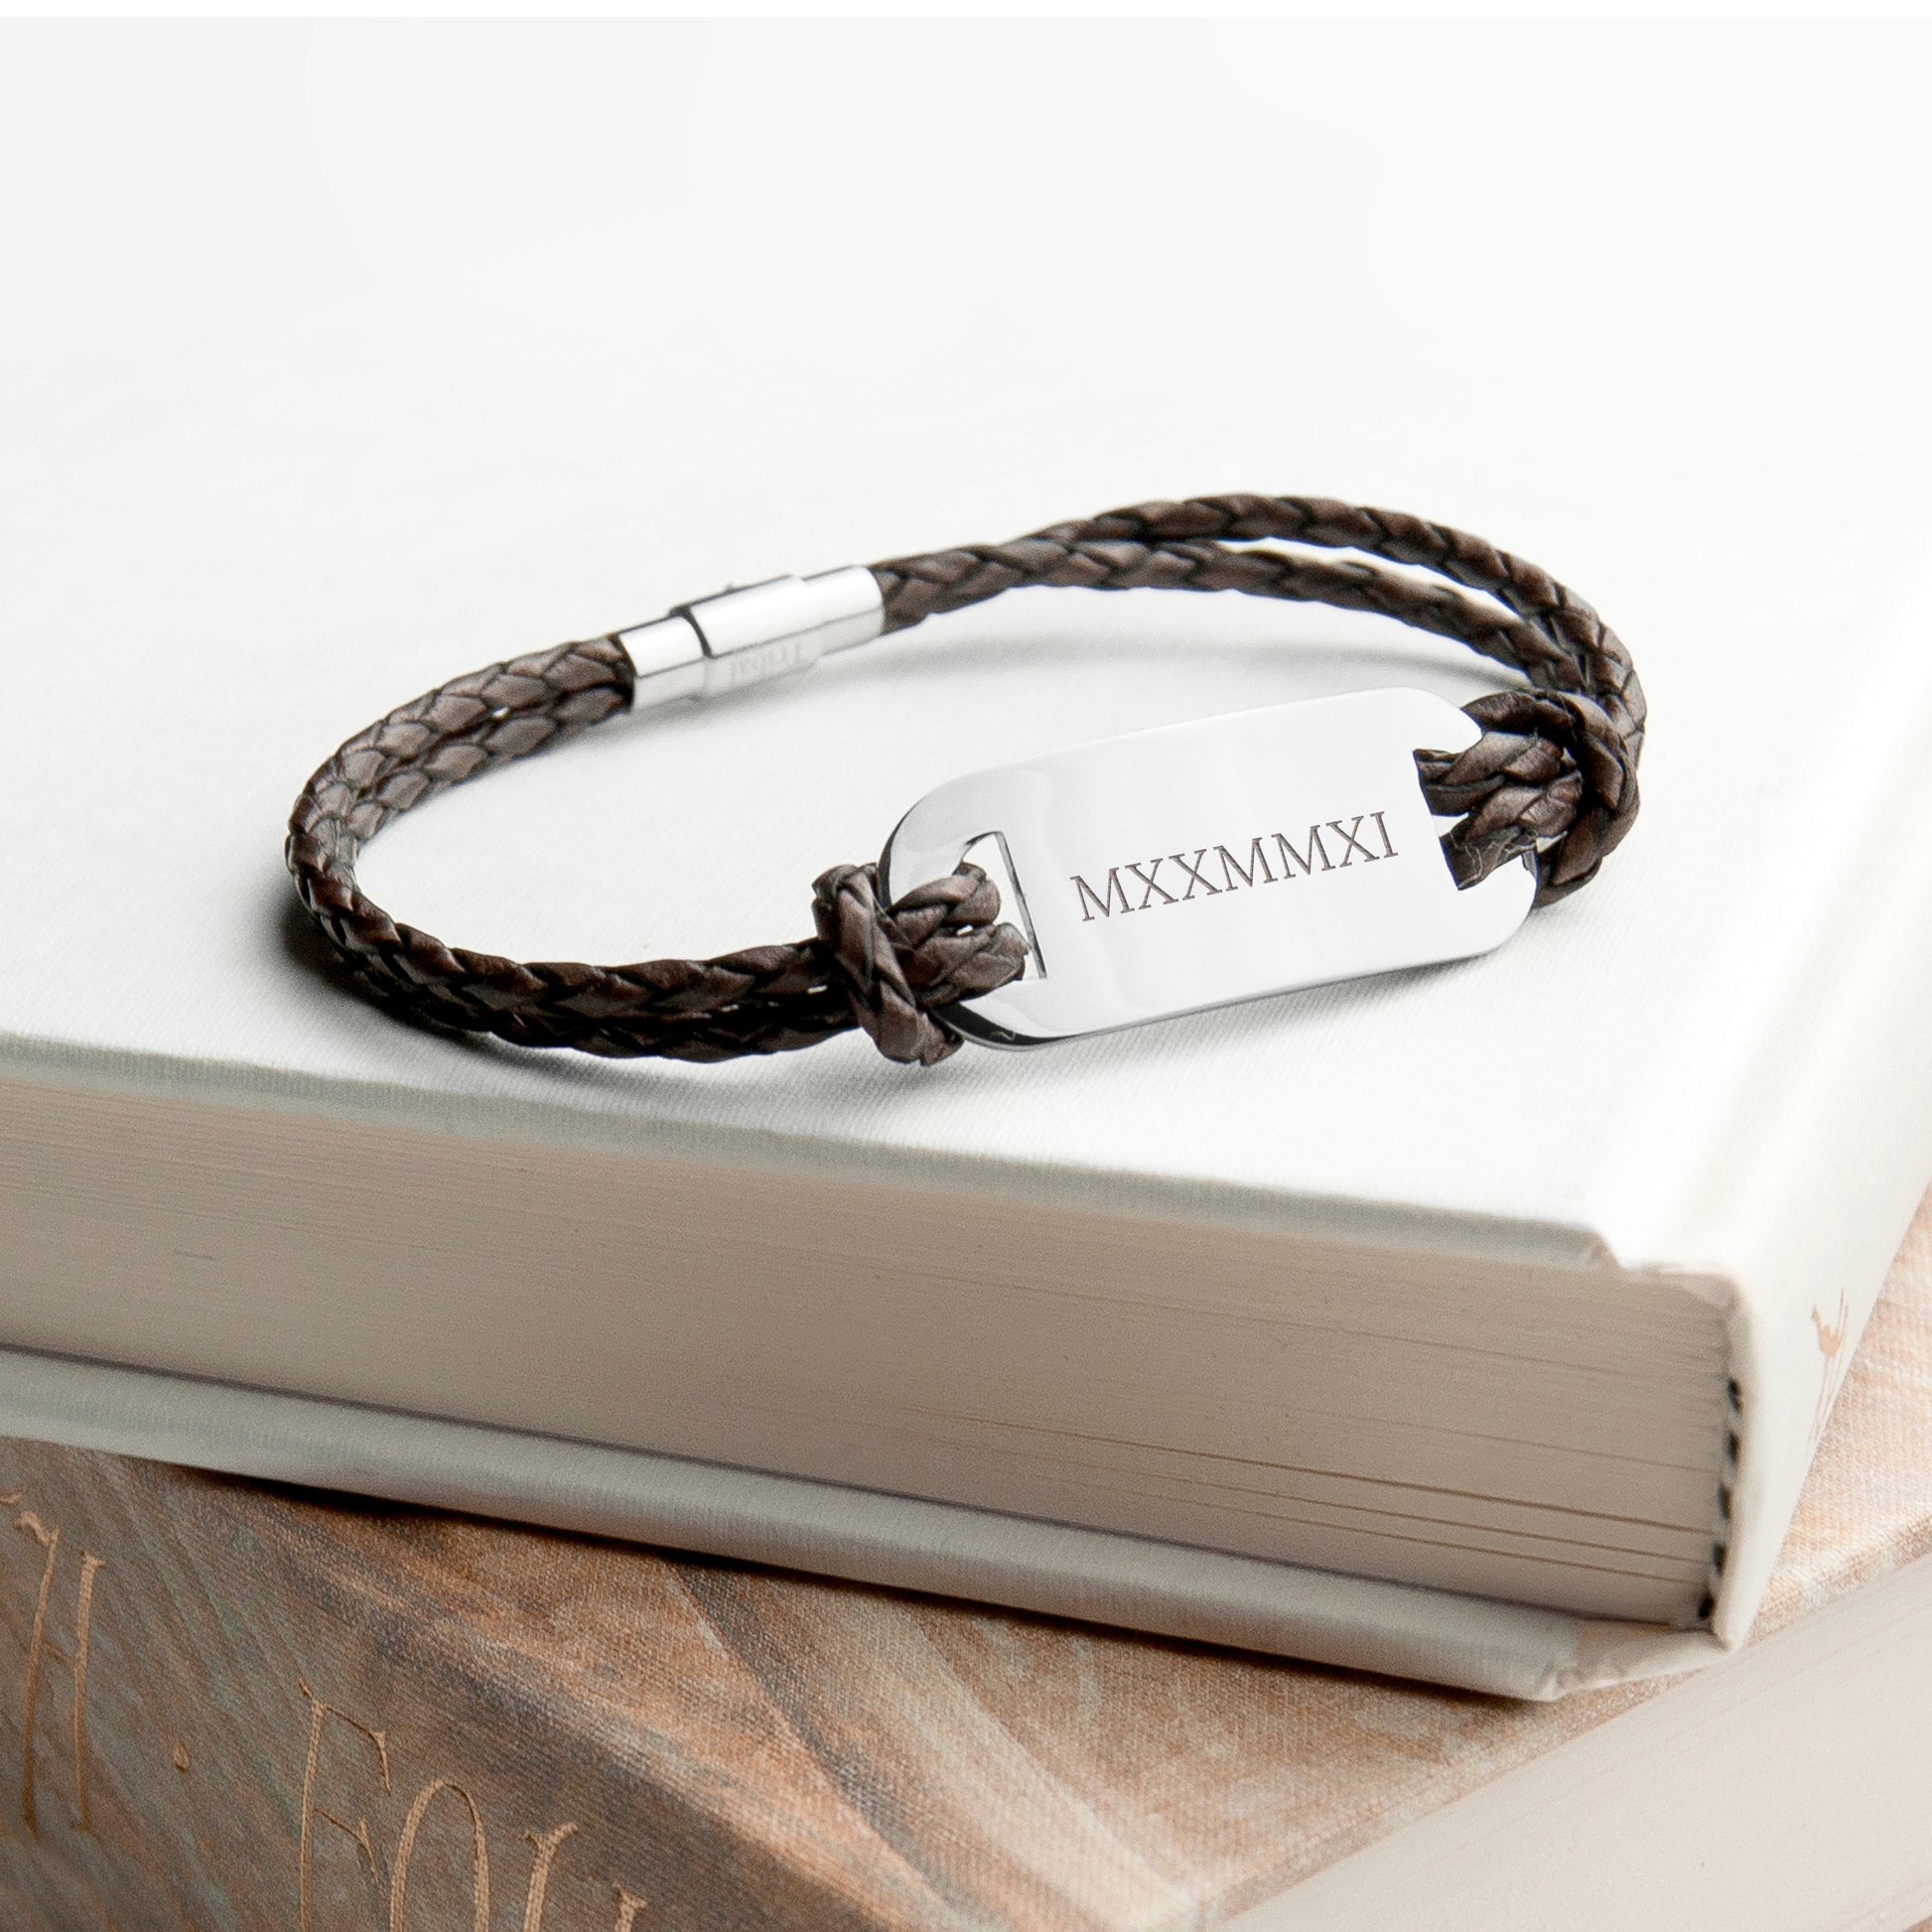 Personalized Men's Bracelets - Personalized Men's Roman Numerals Statement Leather Bracelet 